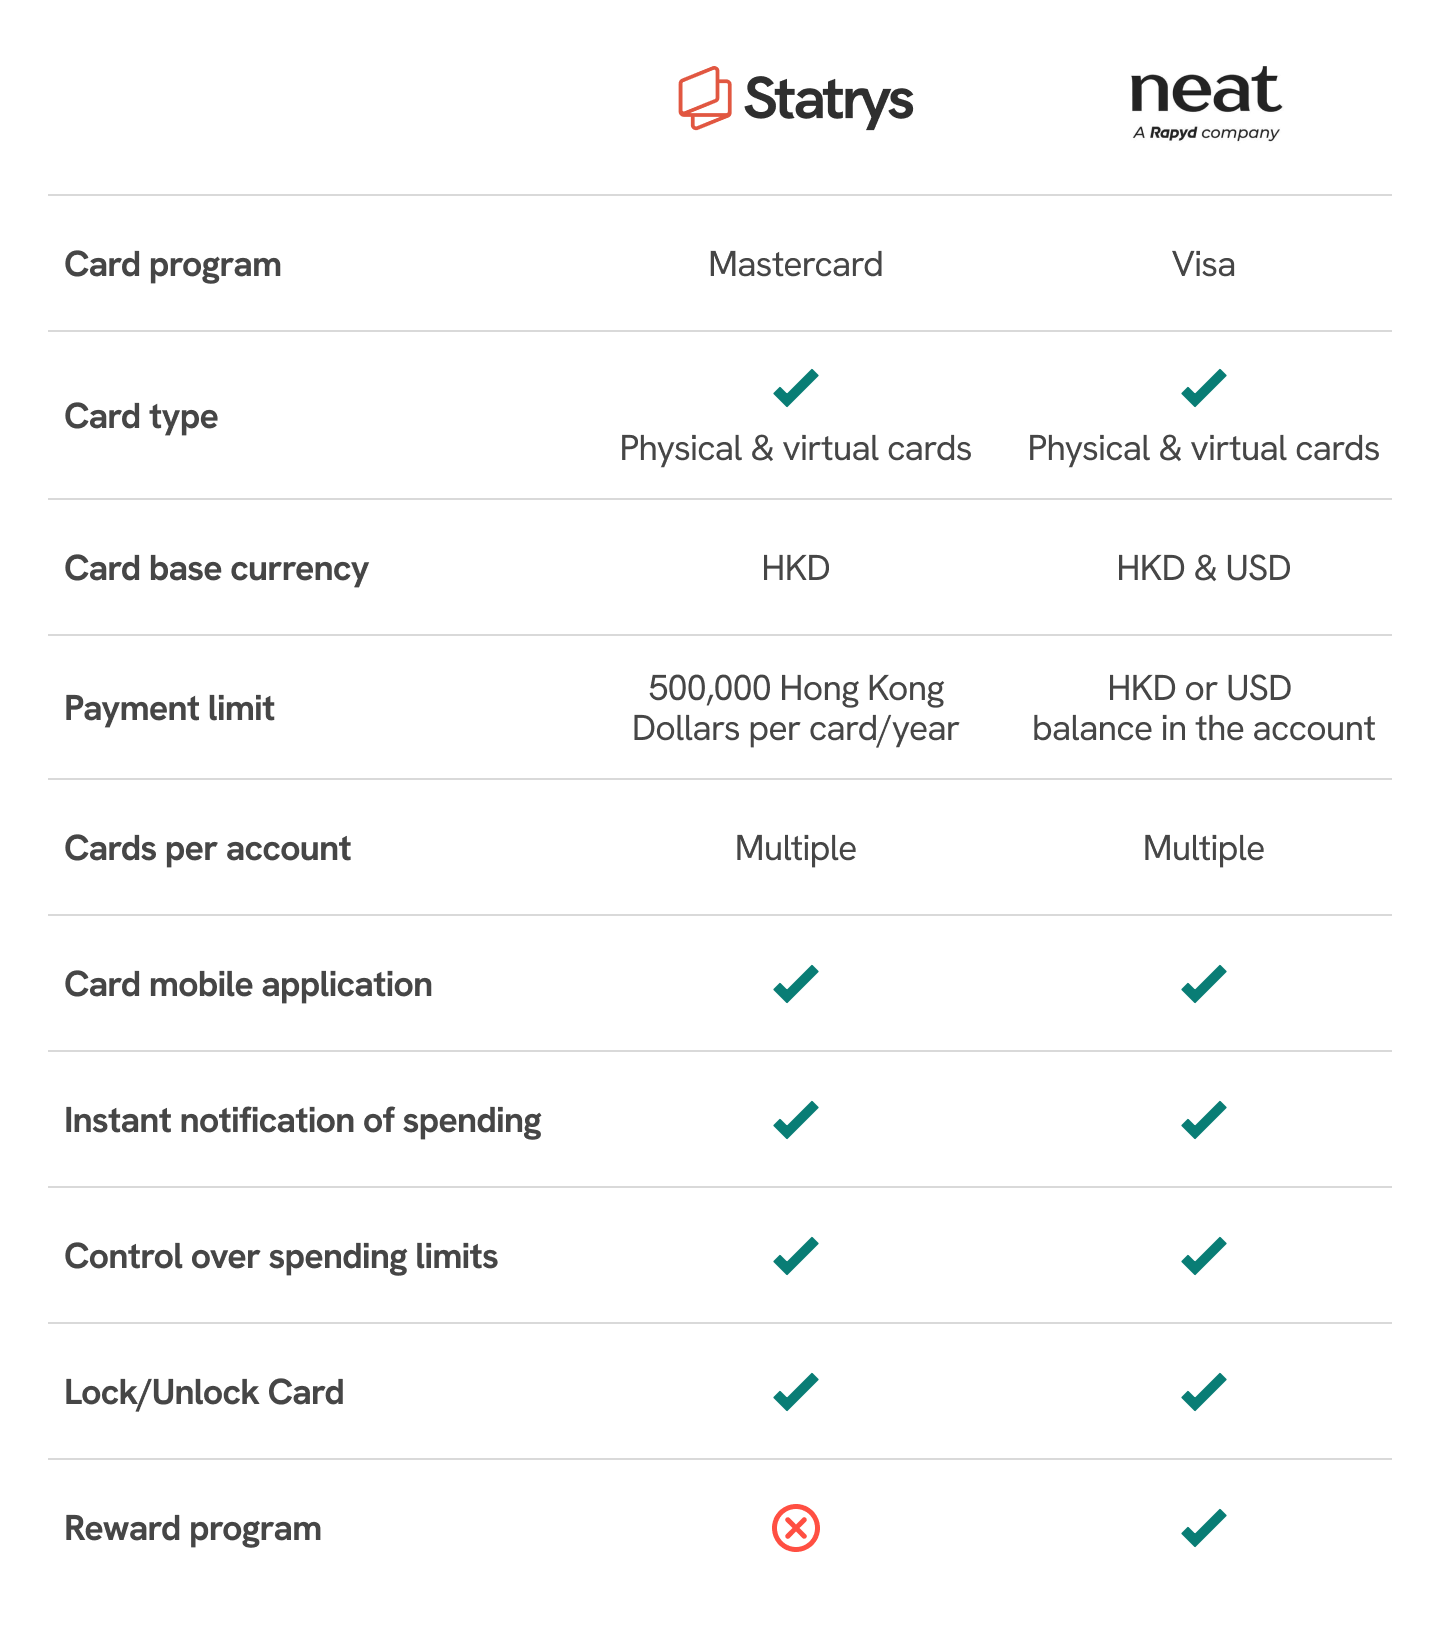 neat vs statrys card comparison